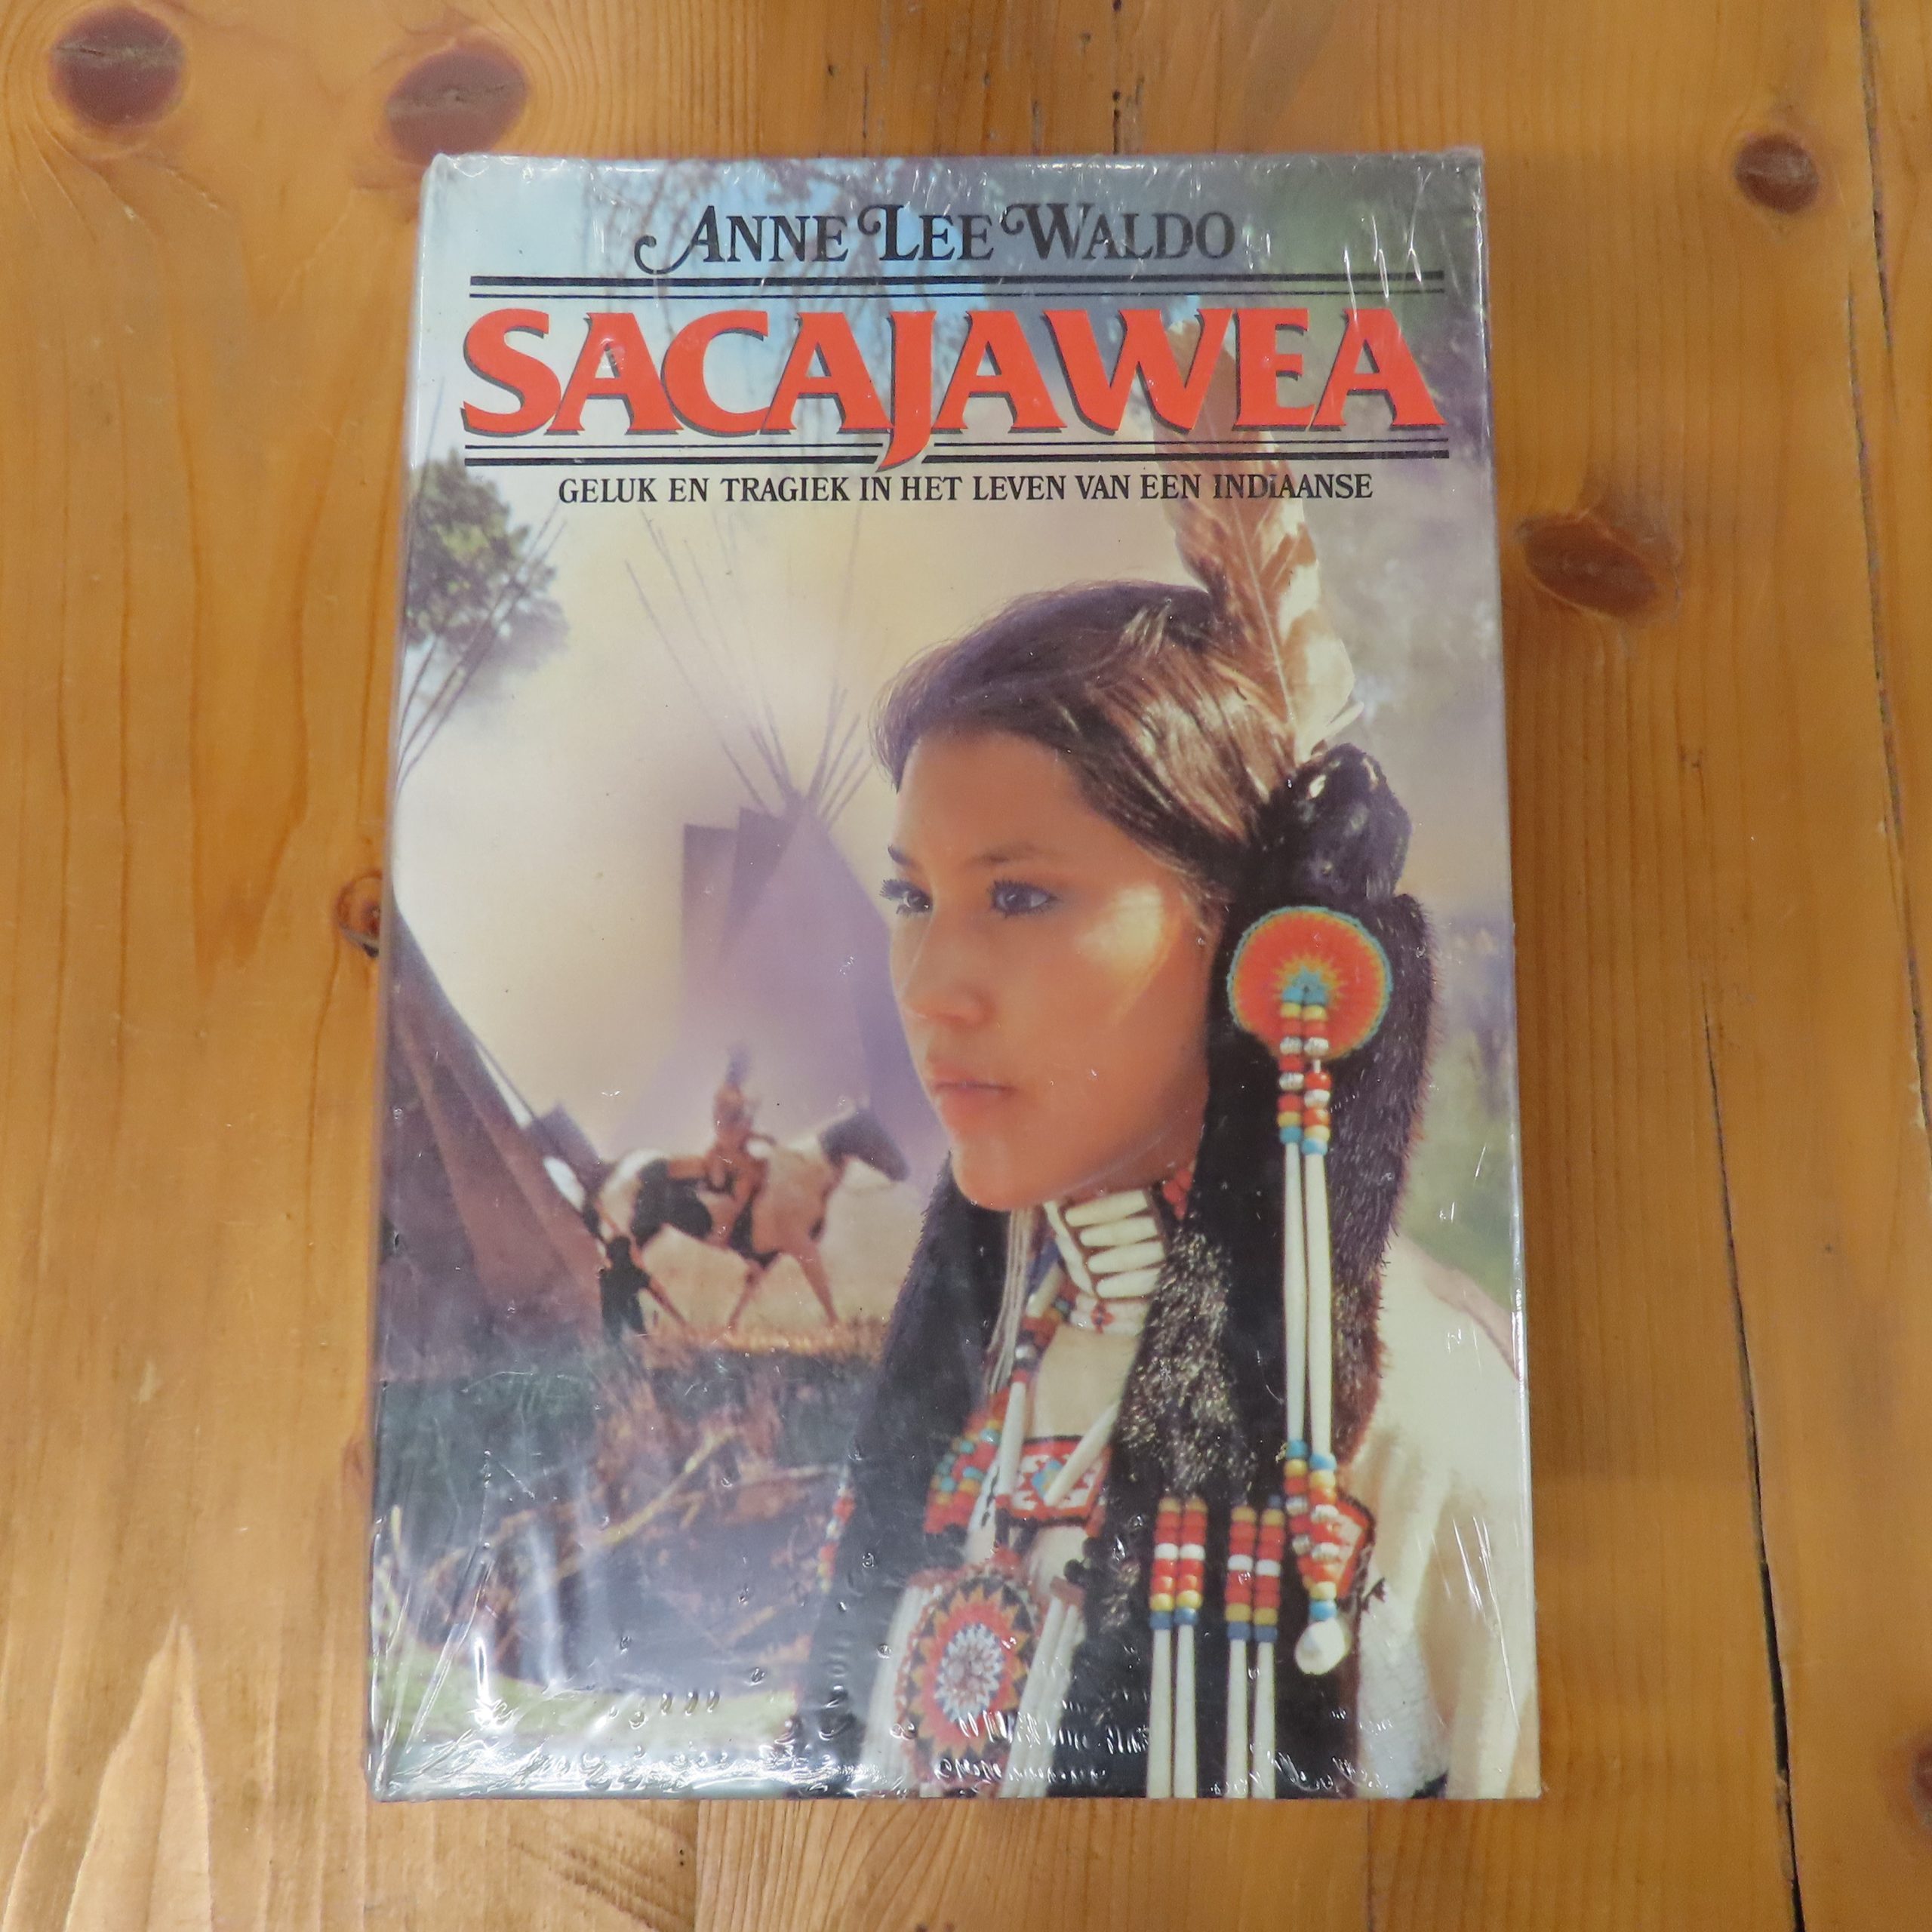 Boek “Sacajawea” van Anne Lee Waldo